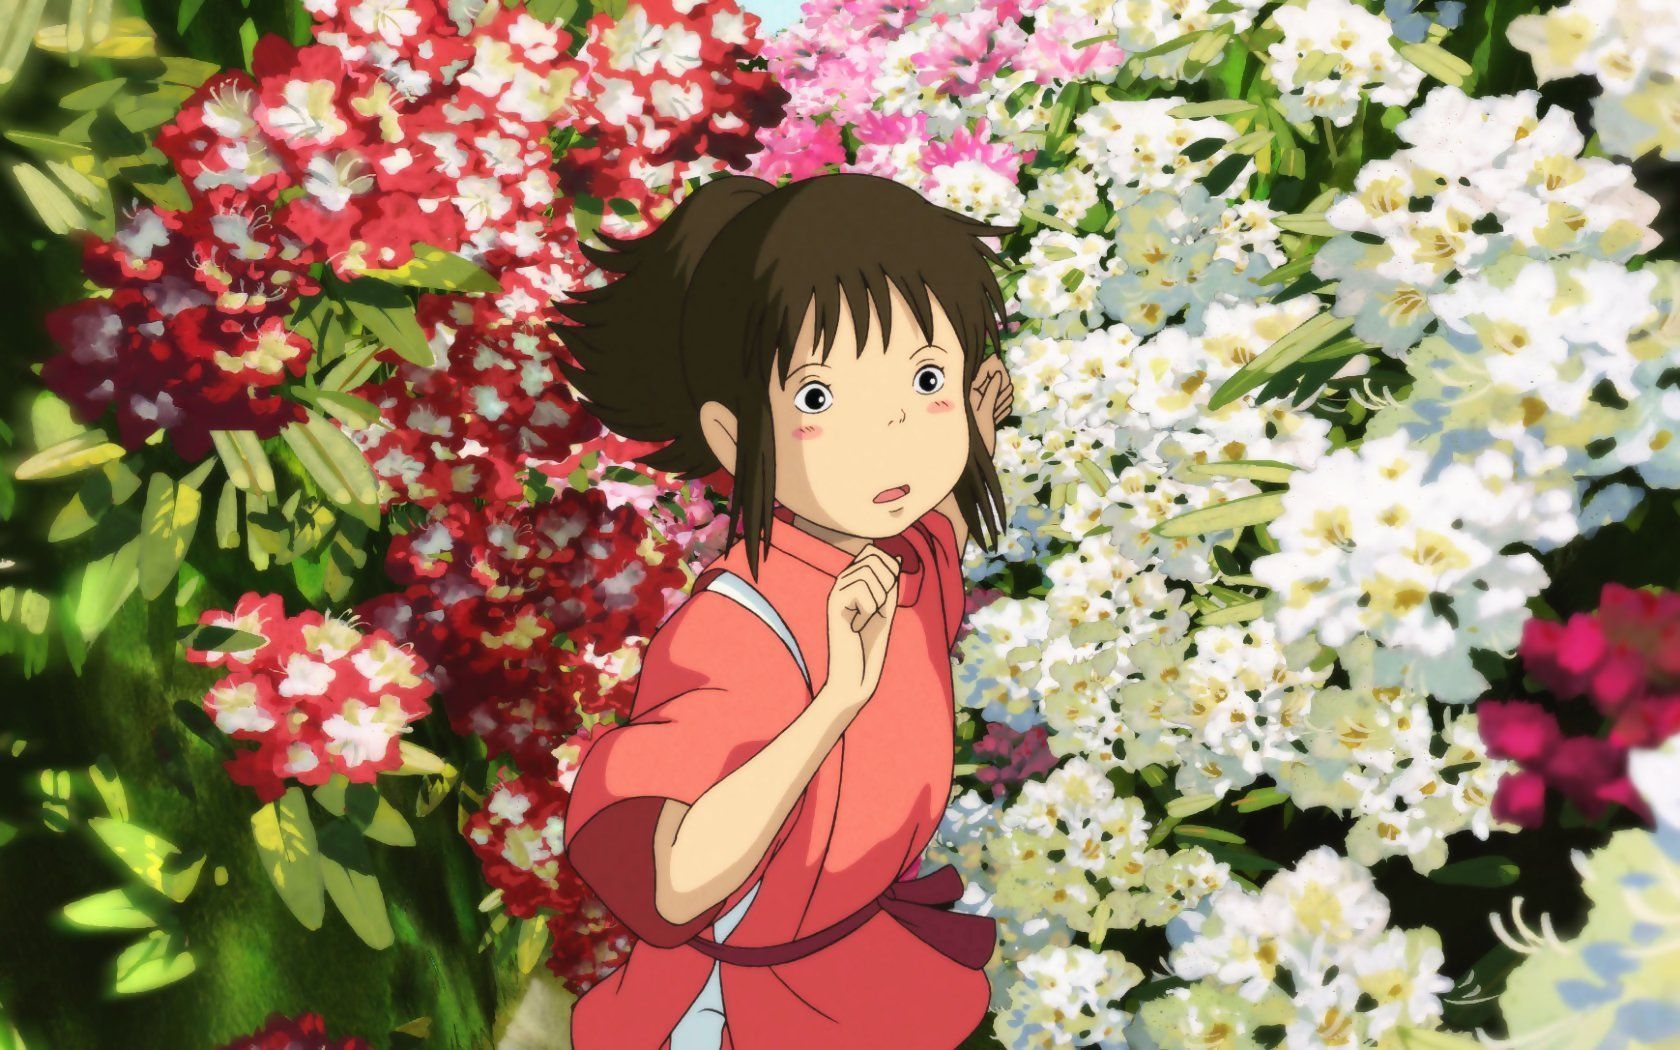 Photo of Ghibli in HQFX